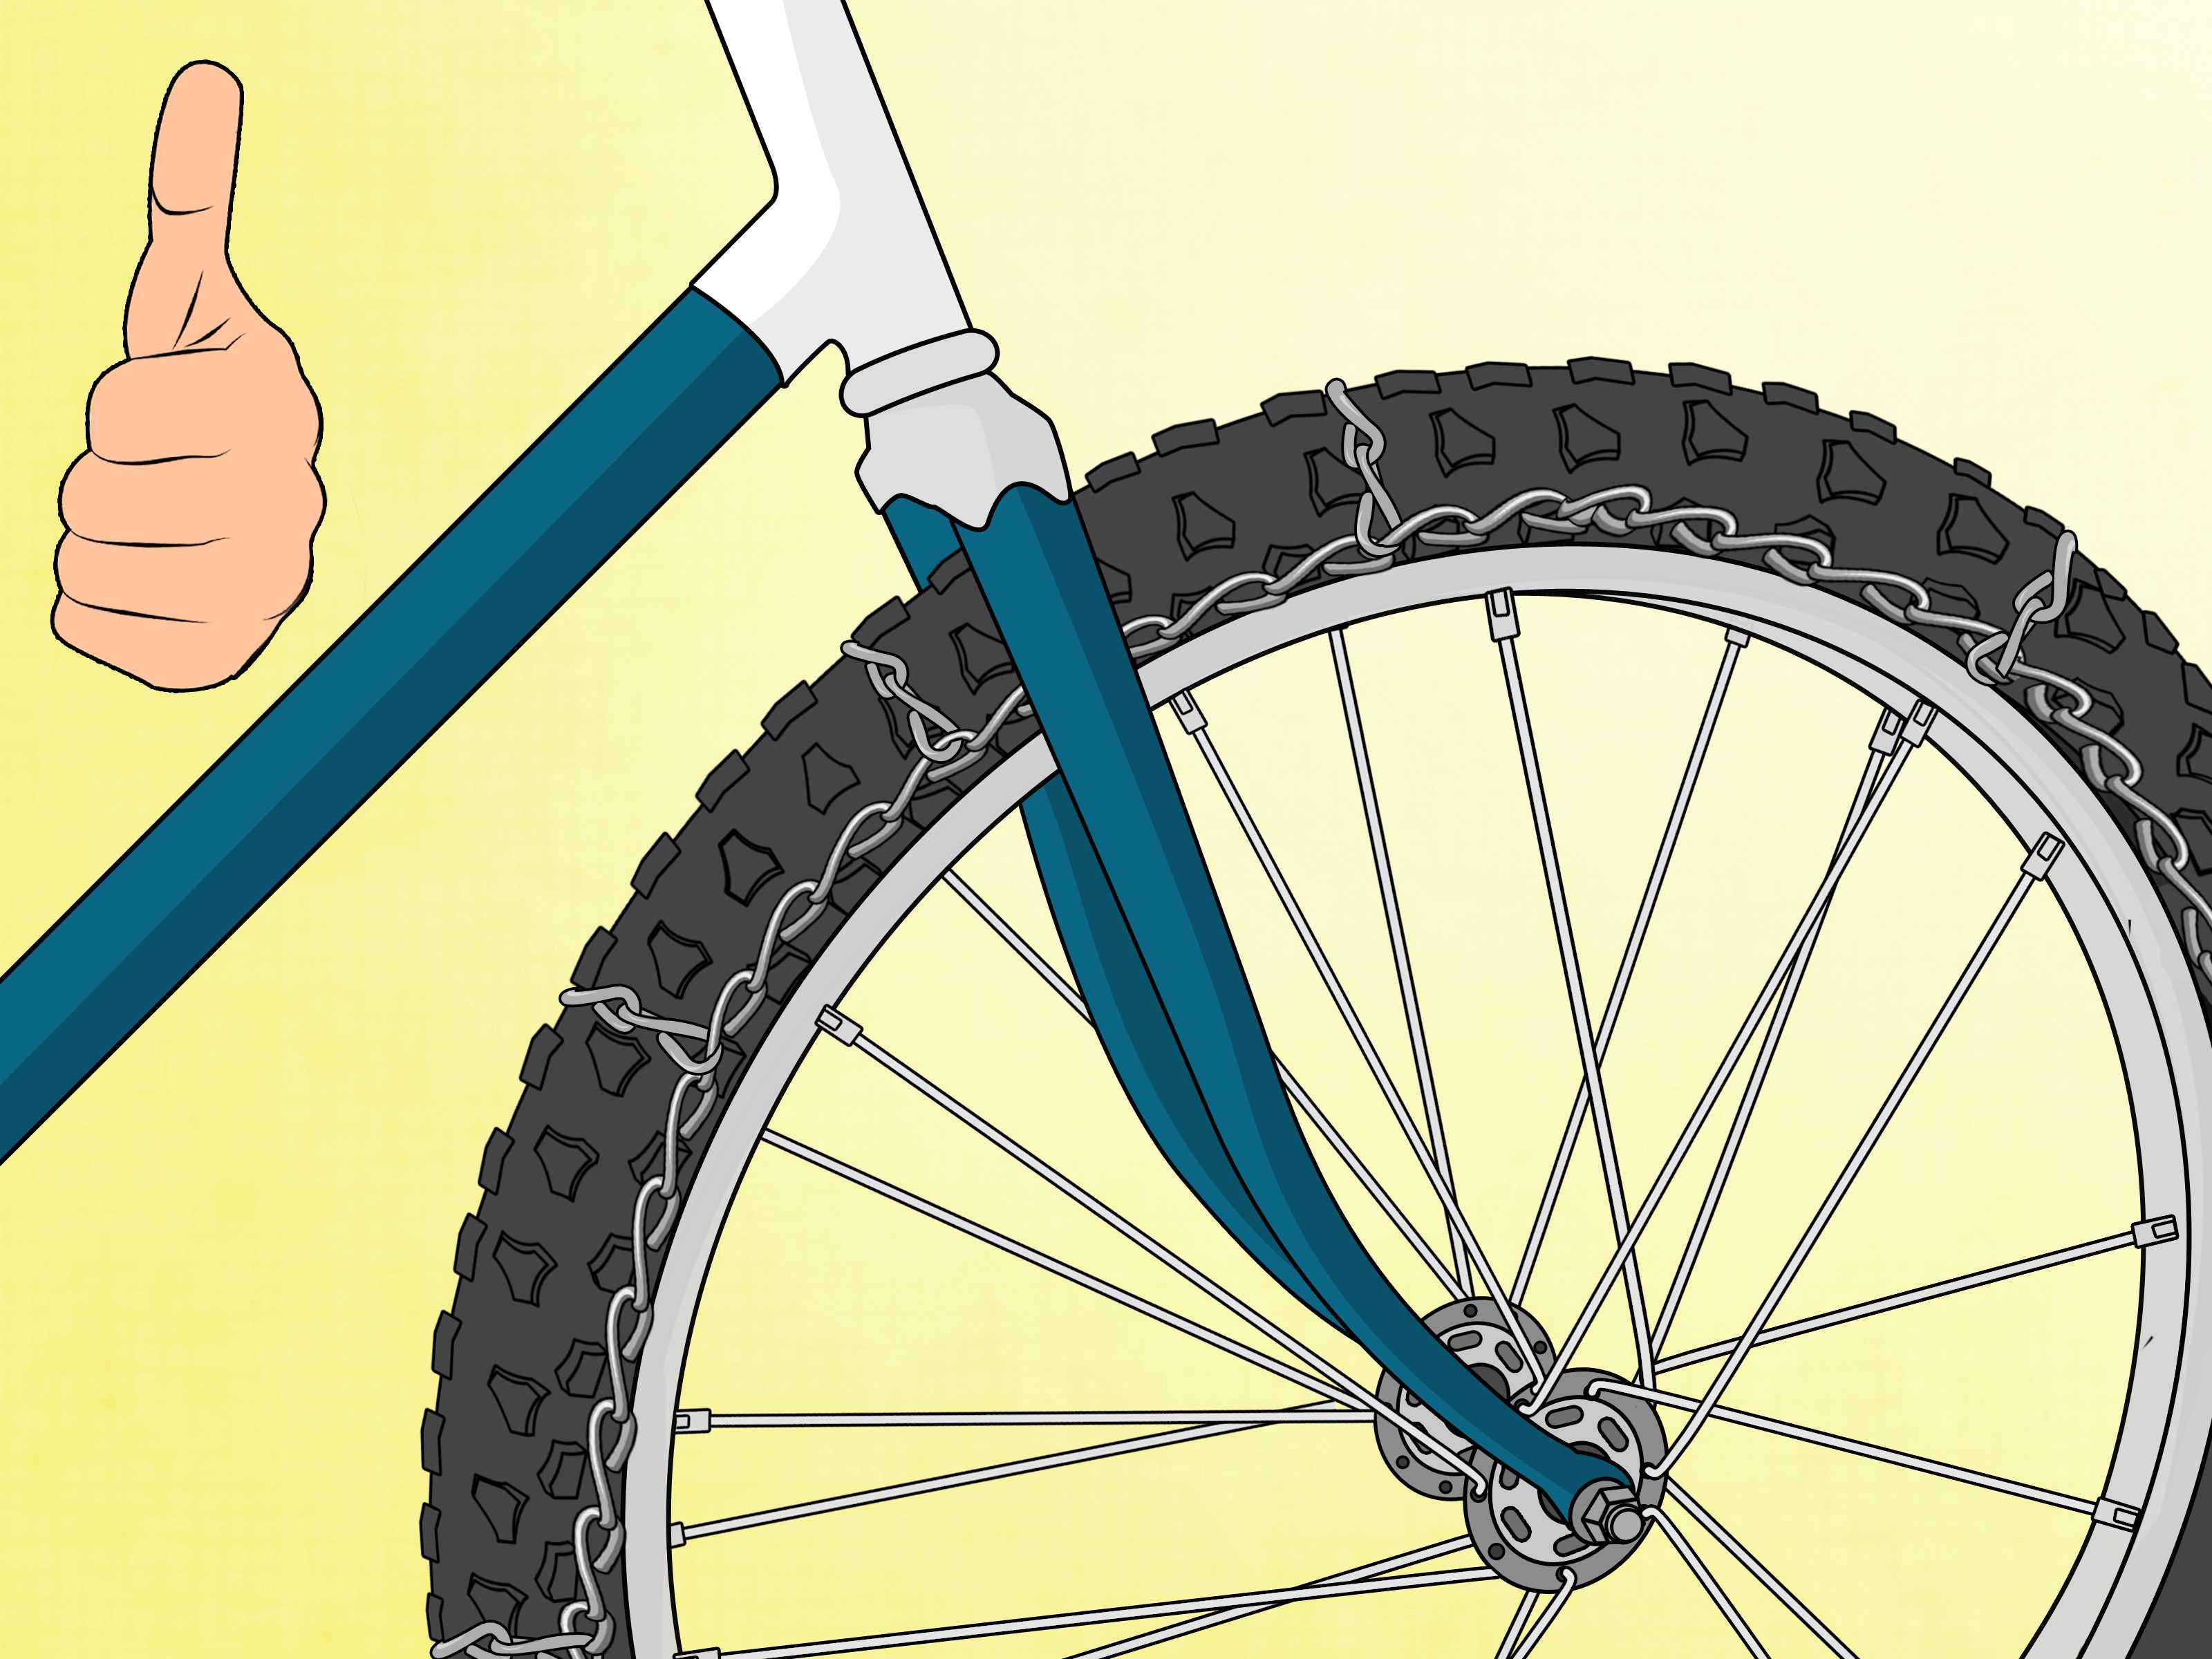 Какие должны быть колеса на велосипеде